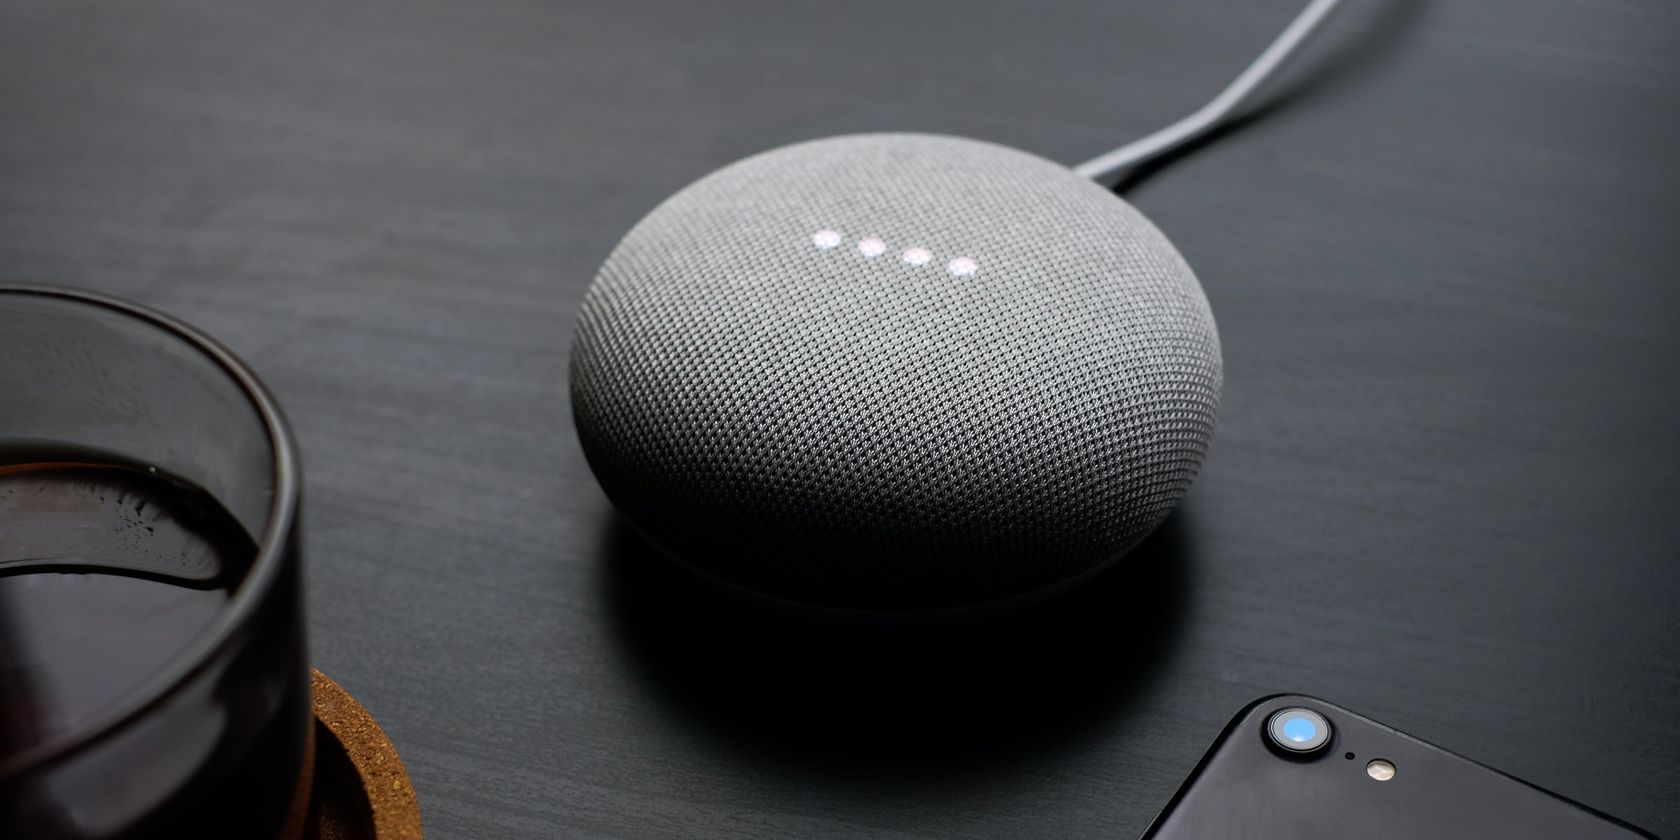 Google Nest Mini smart speaker sitting on a desktop.